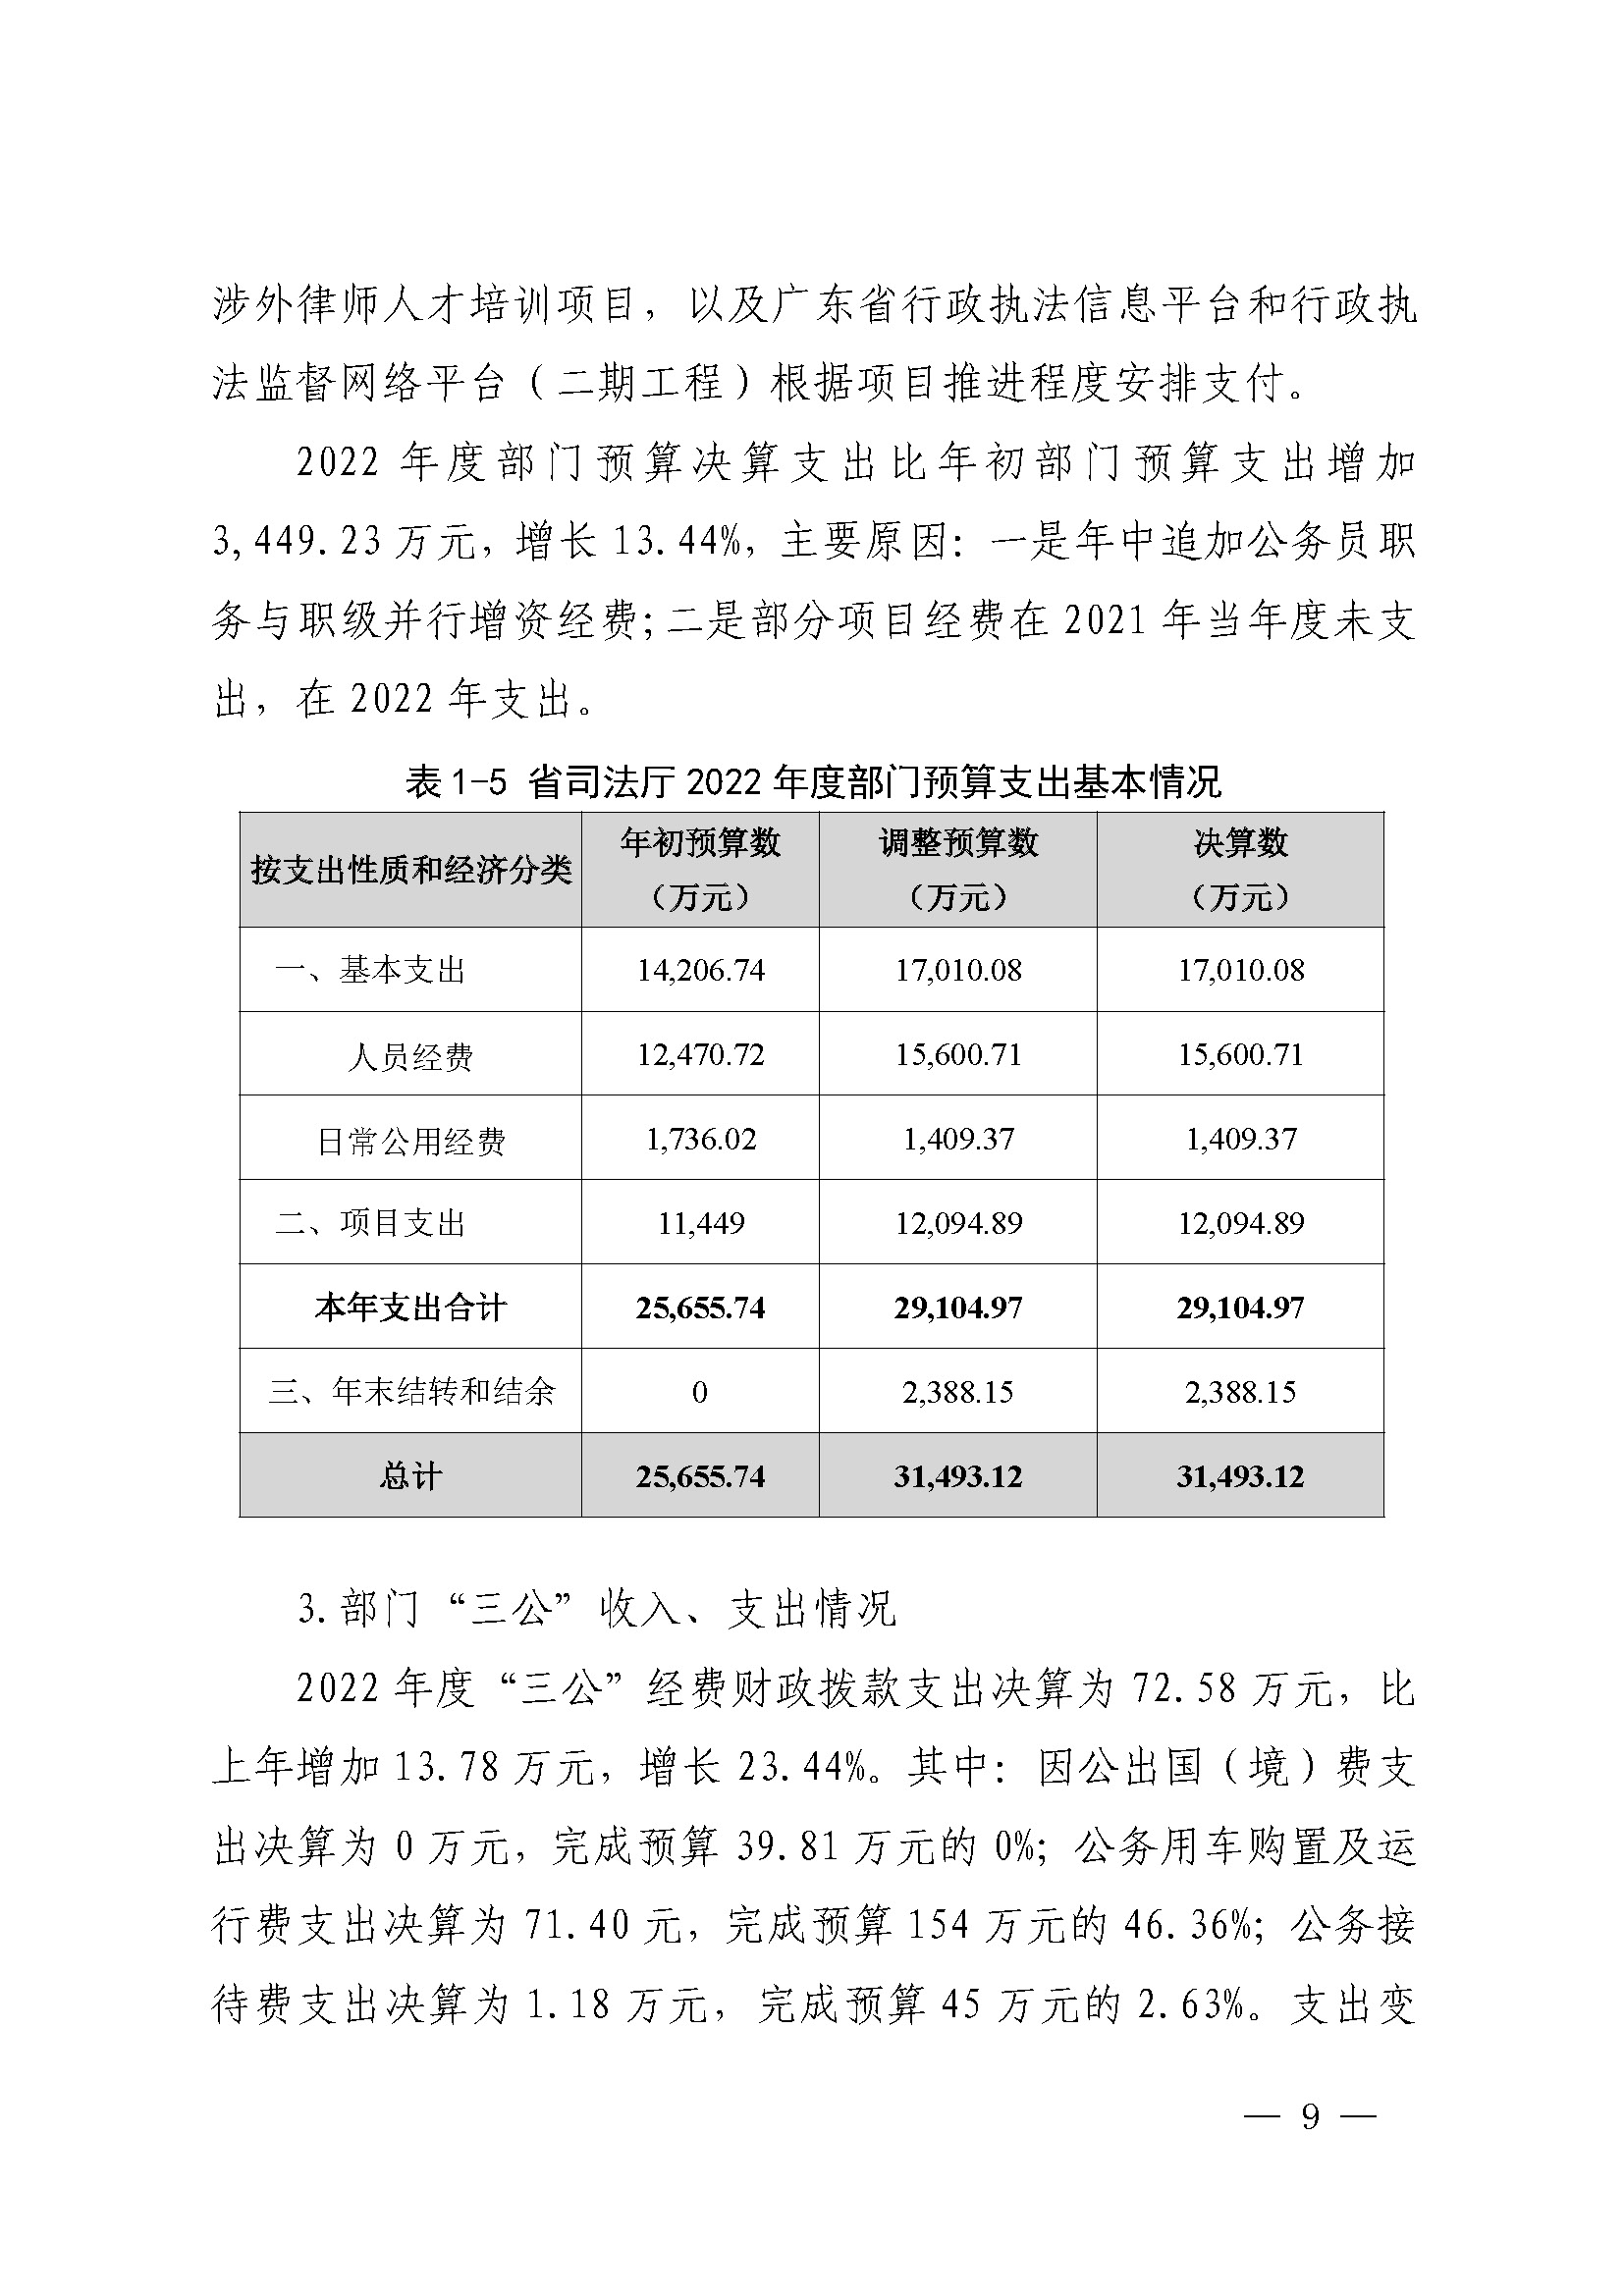 广东省司法厅2022年度部门整体支出绩效自评报告_页面_09.jpg